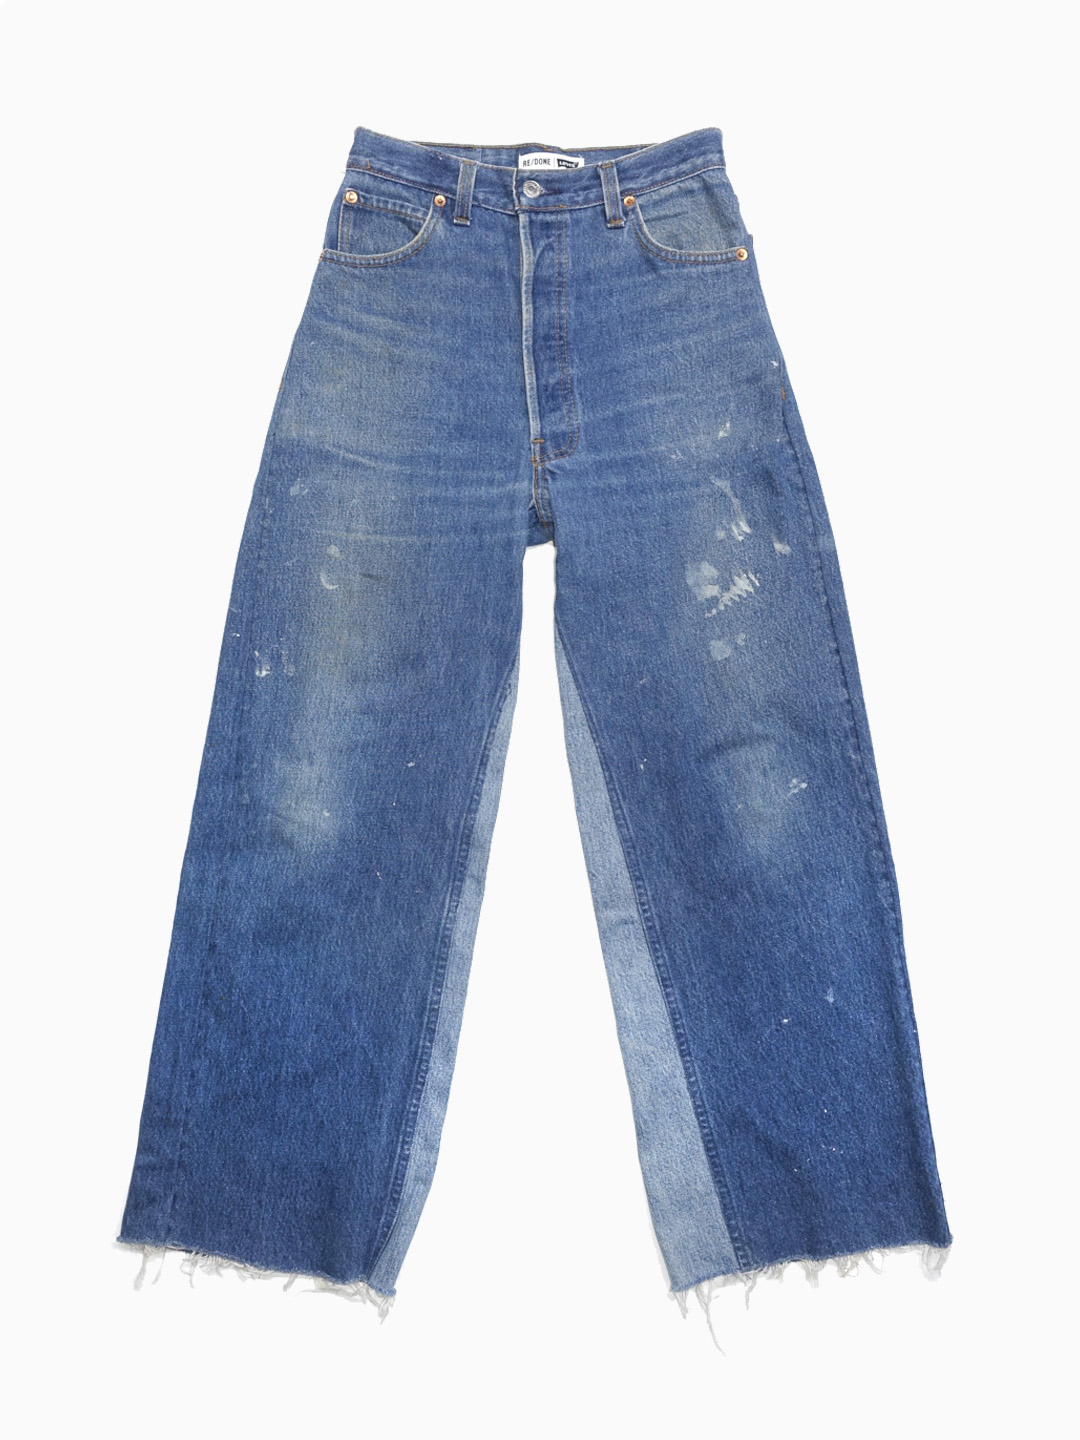 RE/DONE X LEVISPainter jeans